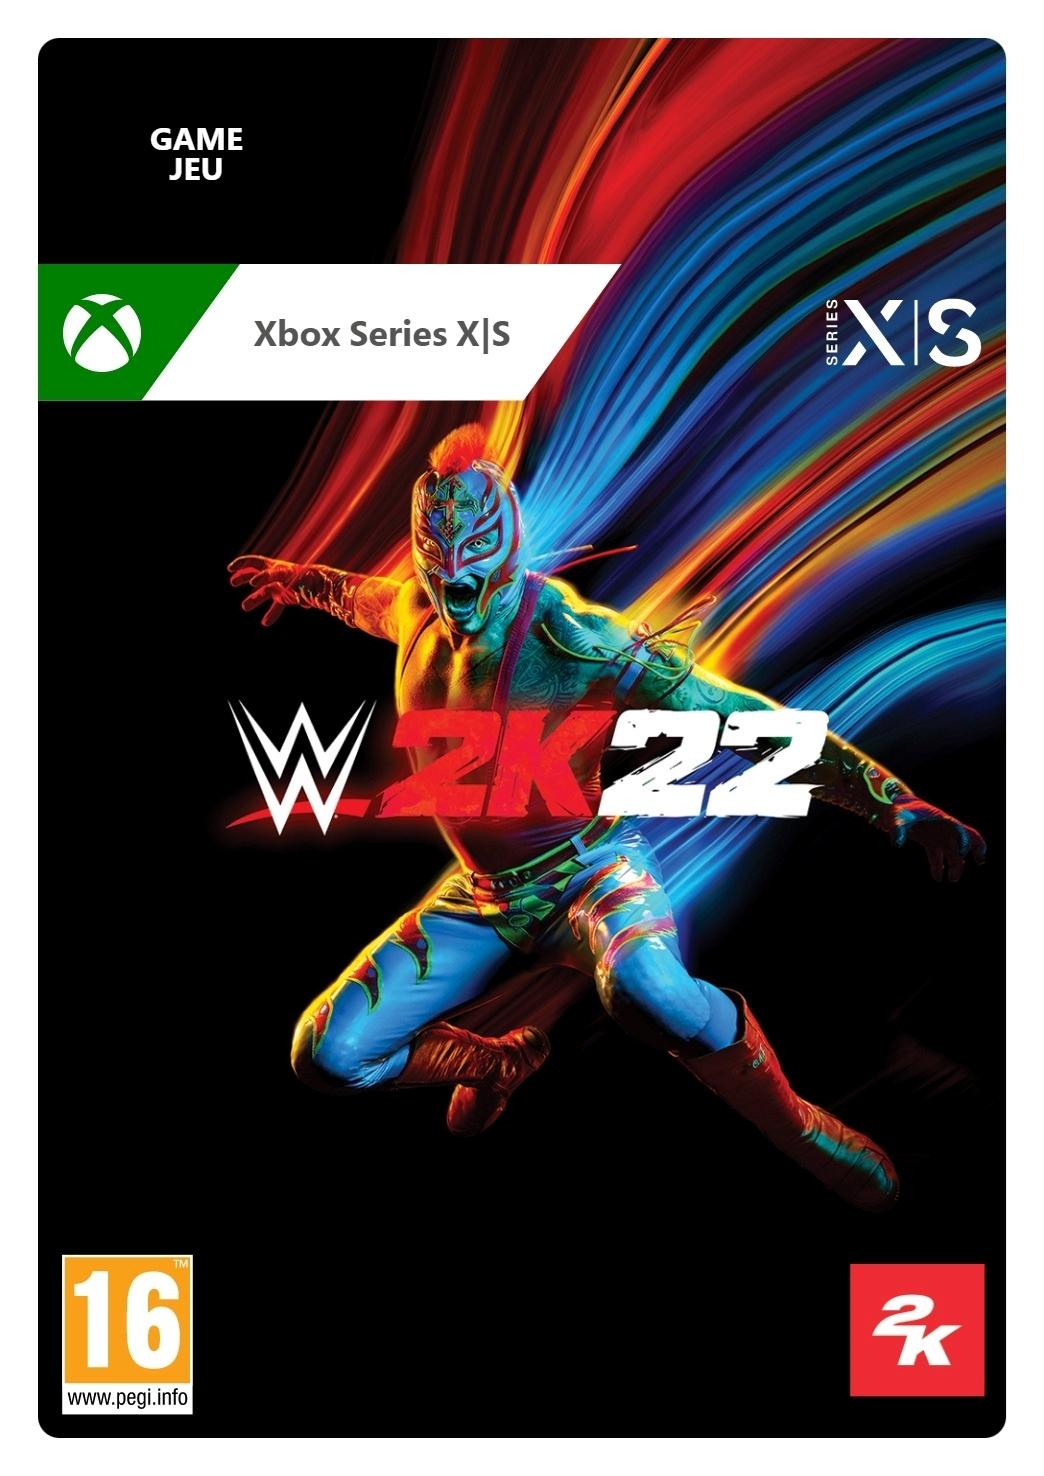 WWE 2K22 - Xbox Series X - Game | G3Q-01344 (e772a6c3-08e7-e745-a374-de93d1a6197a)